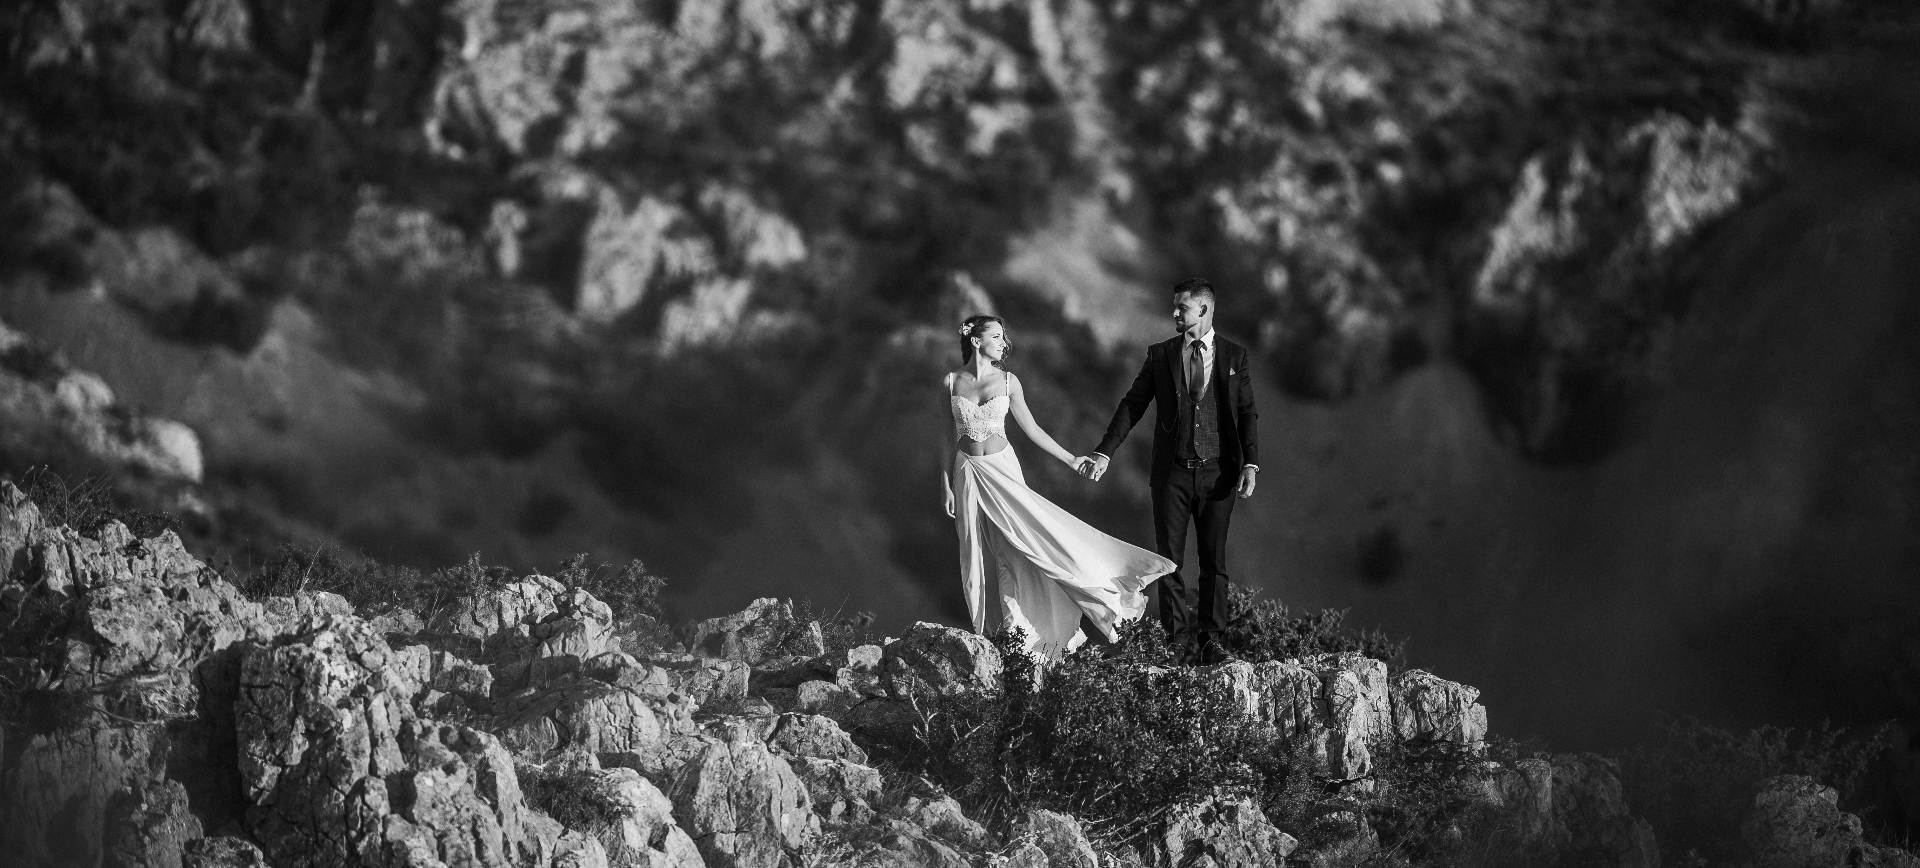 hiking wedding package mediterranean elope to croatia